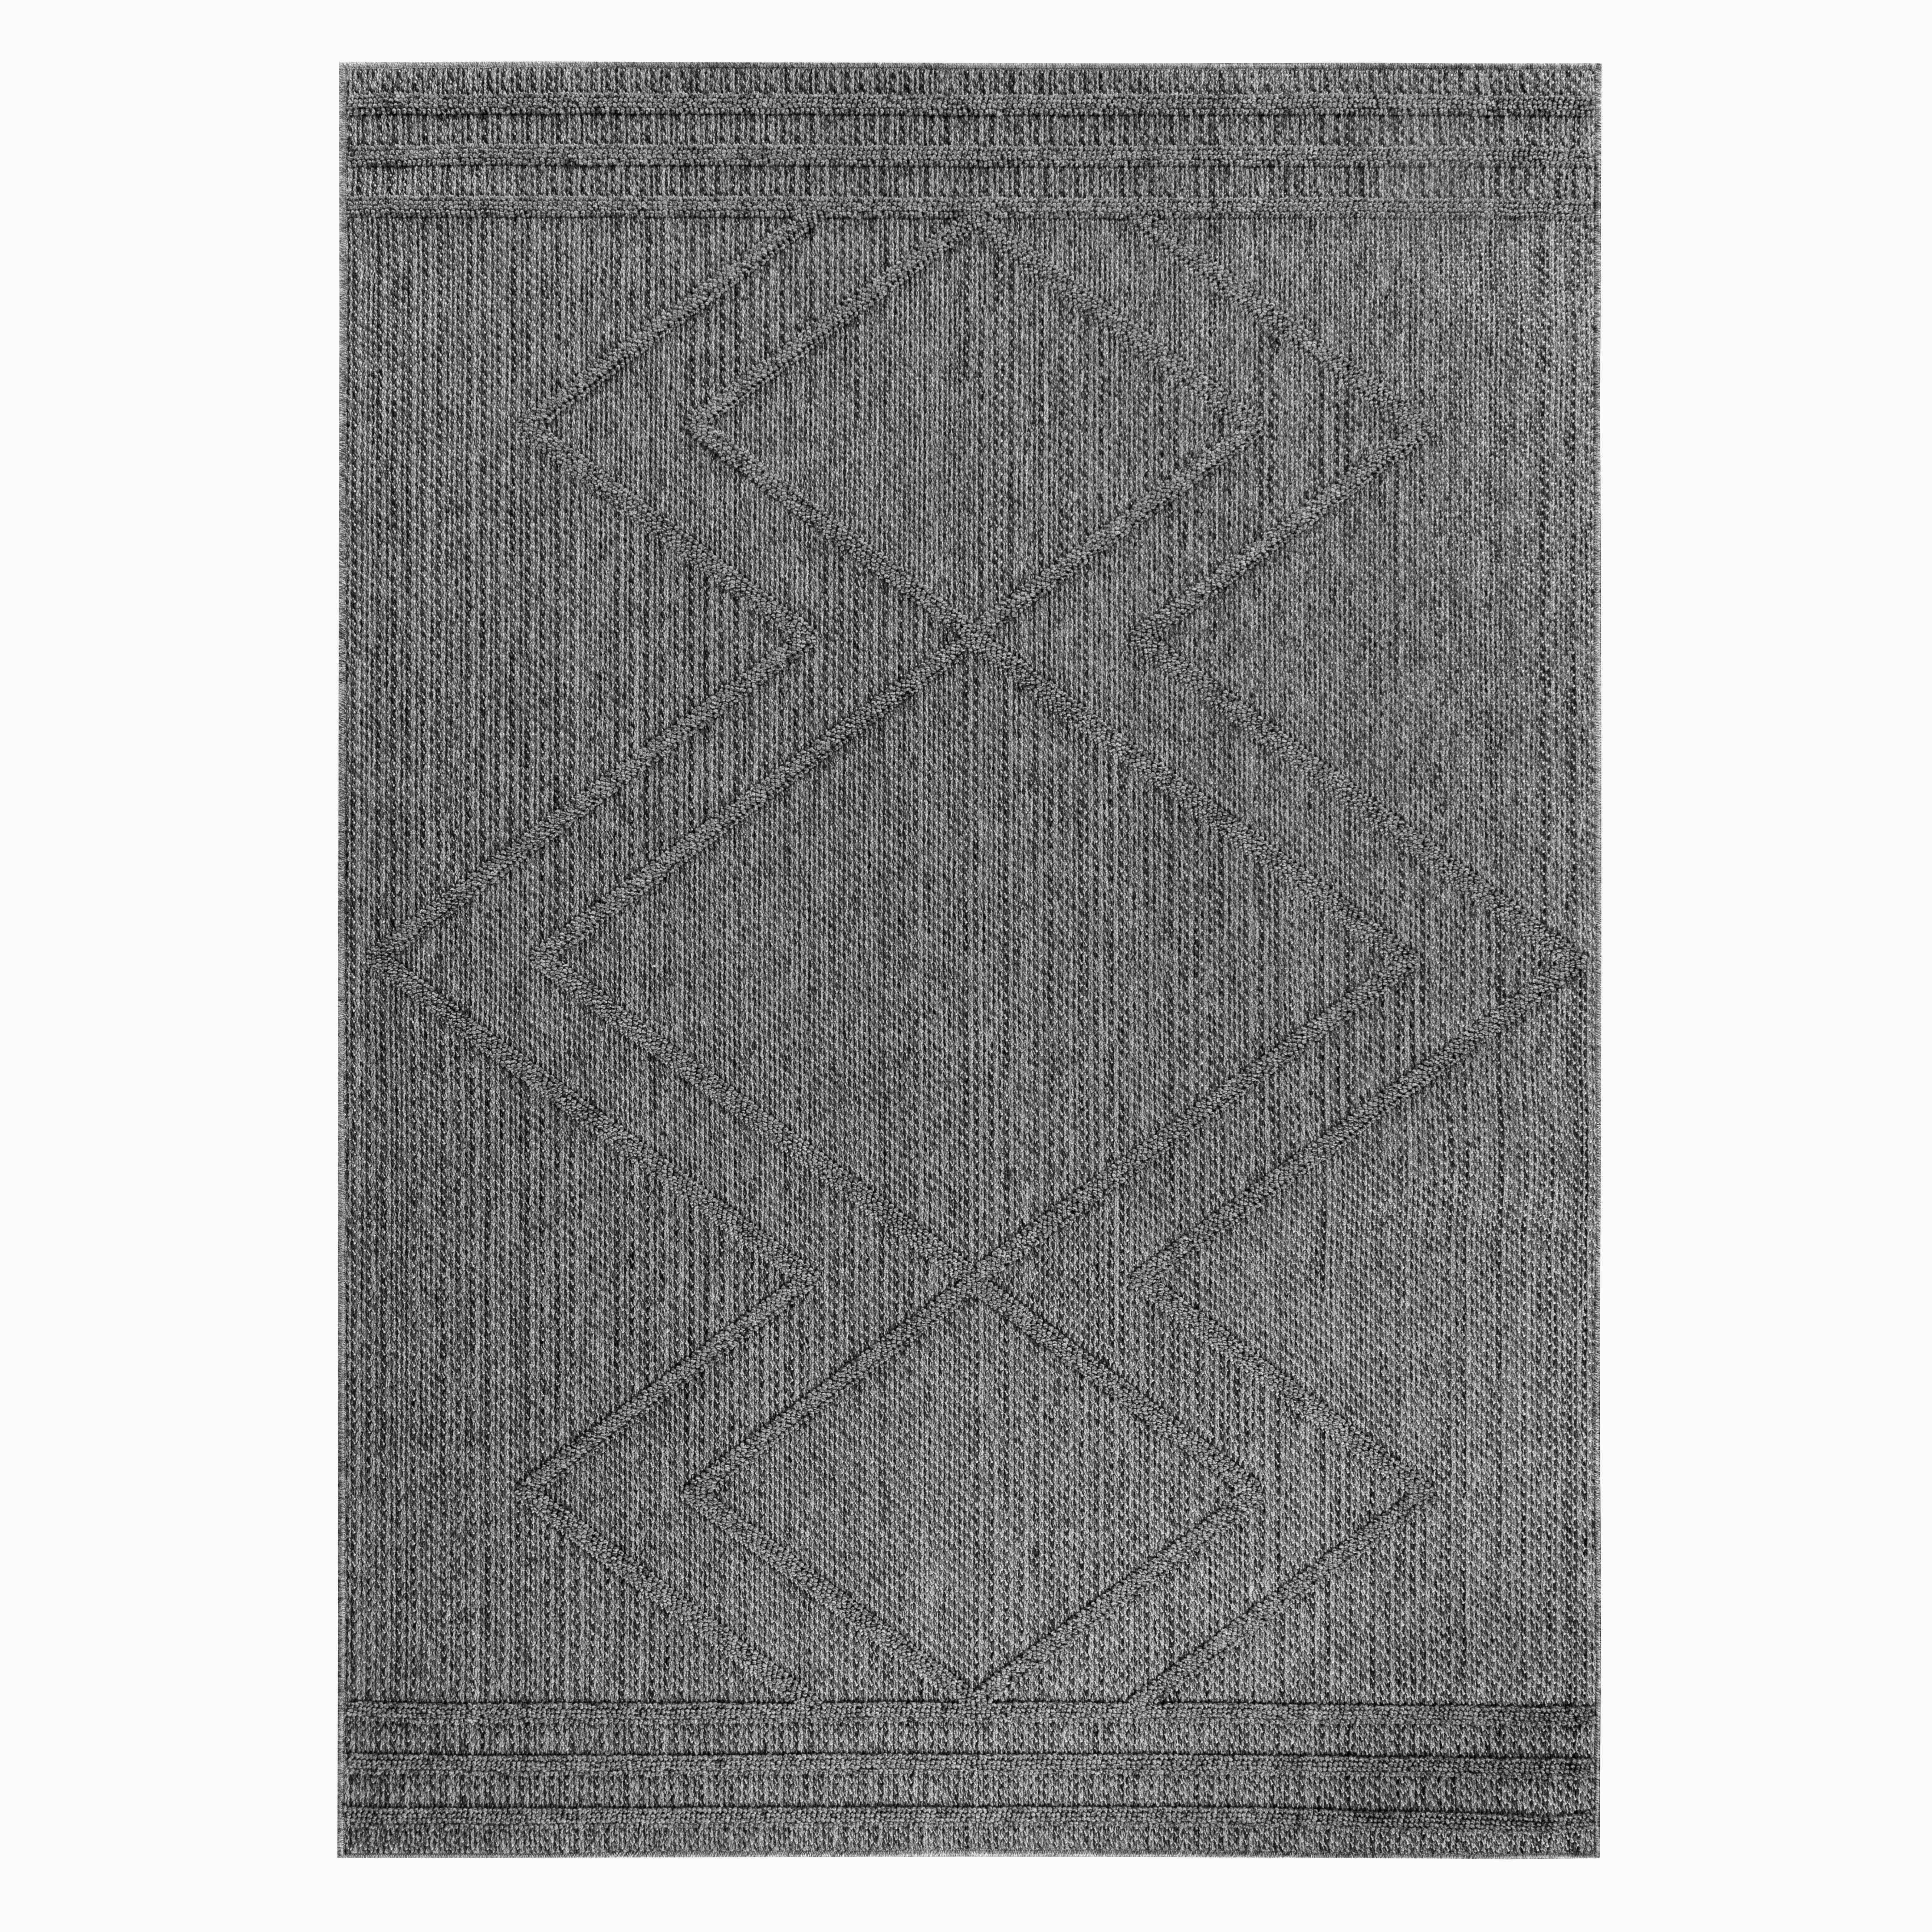 OUTDOORTEPPICH 80/150 cm Patara  - Grau, Design, Textil (80/150cm) - Novel